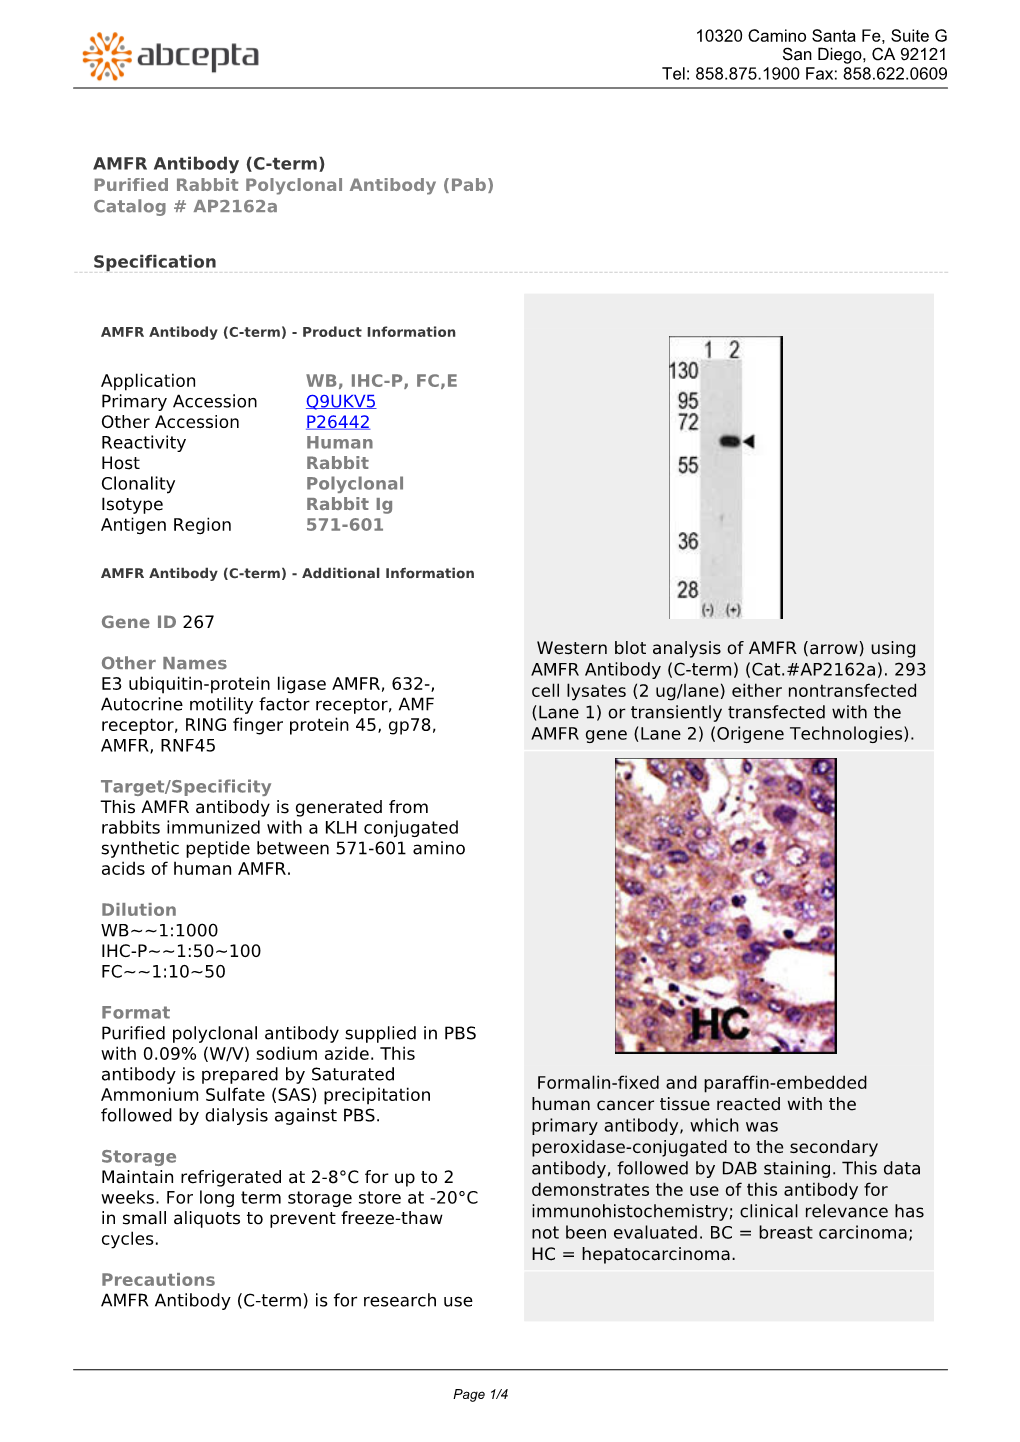 AMFR Antibody (C-Term) Purified Rabbit Polyclonal Antibody (Pab) Catalog # Ap2162a